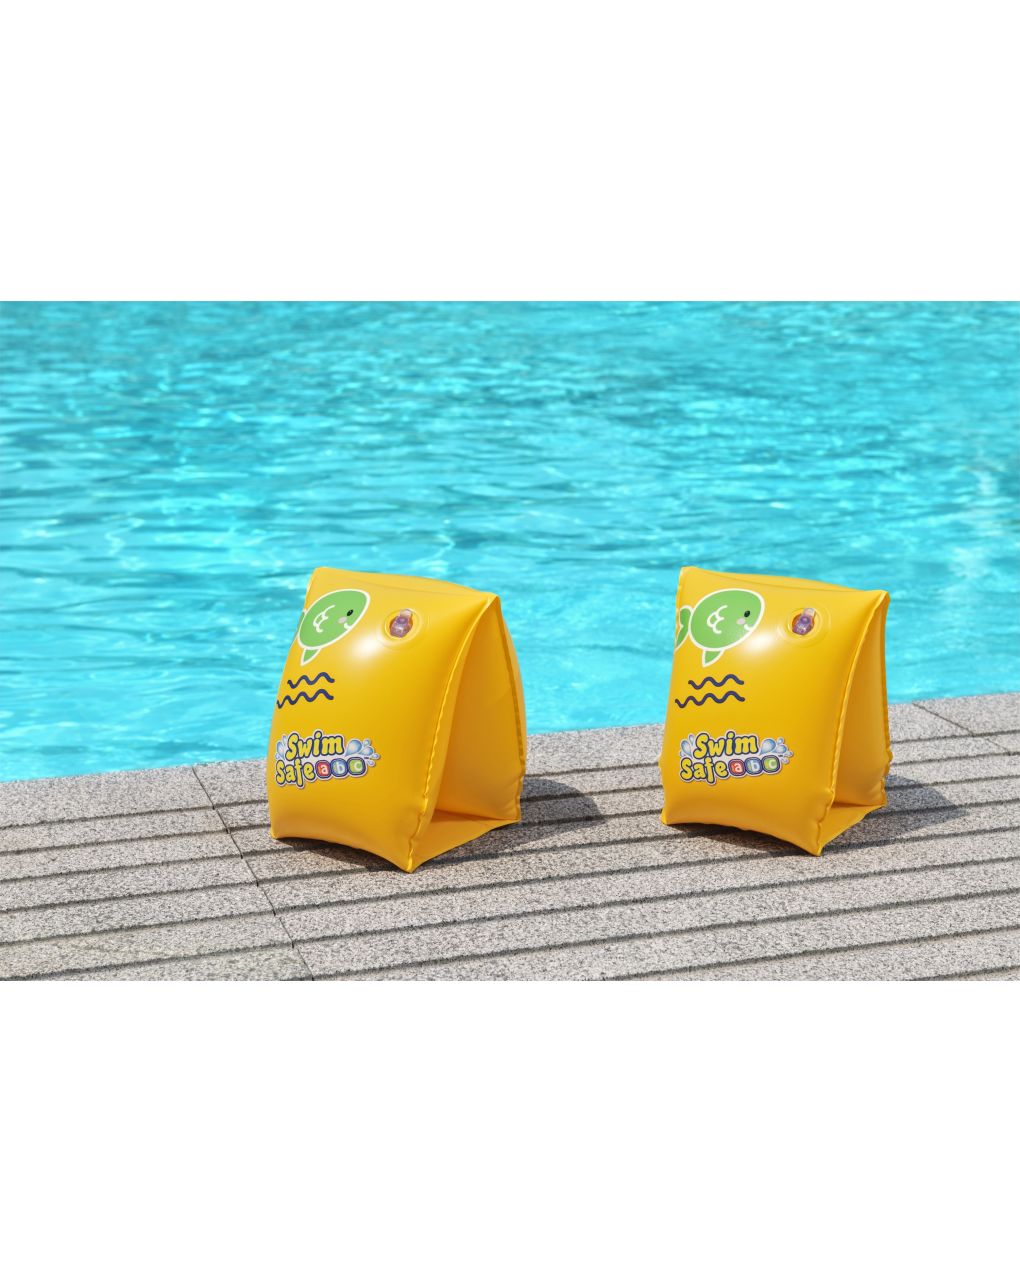 Manguitos hinchables swim safe abc™ aquastar™ 25x15 cm talla 3/6 años (2 colores surtidos) - bestway - Bestway